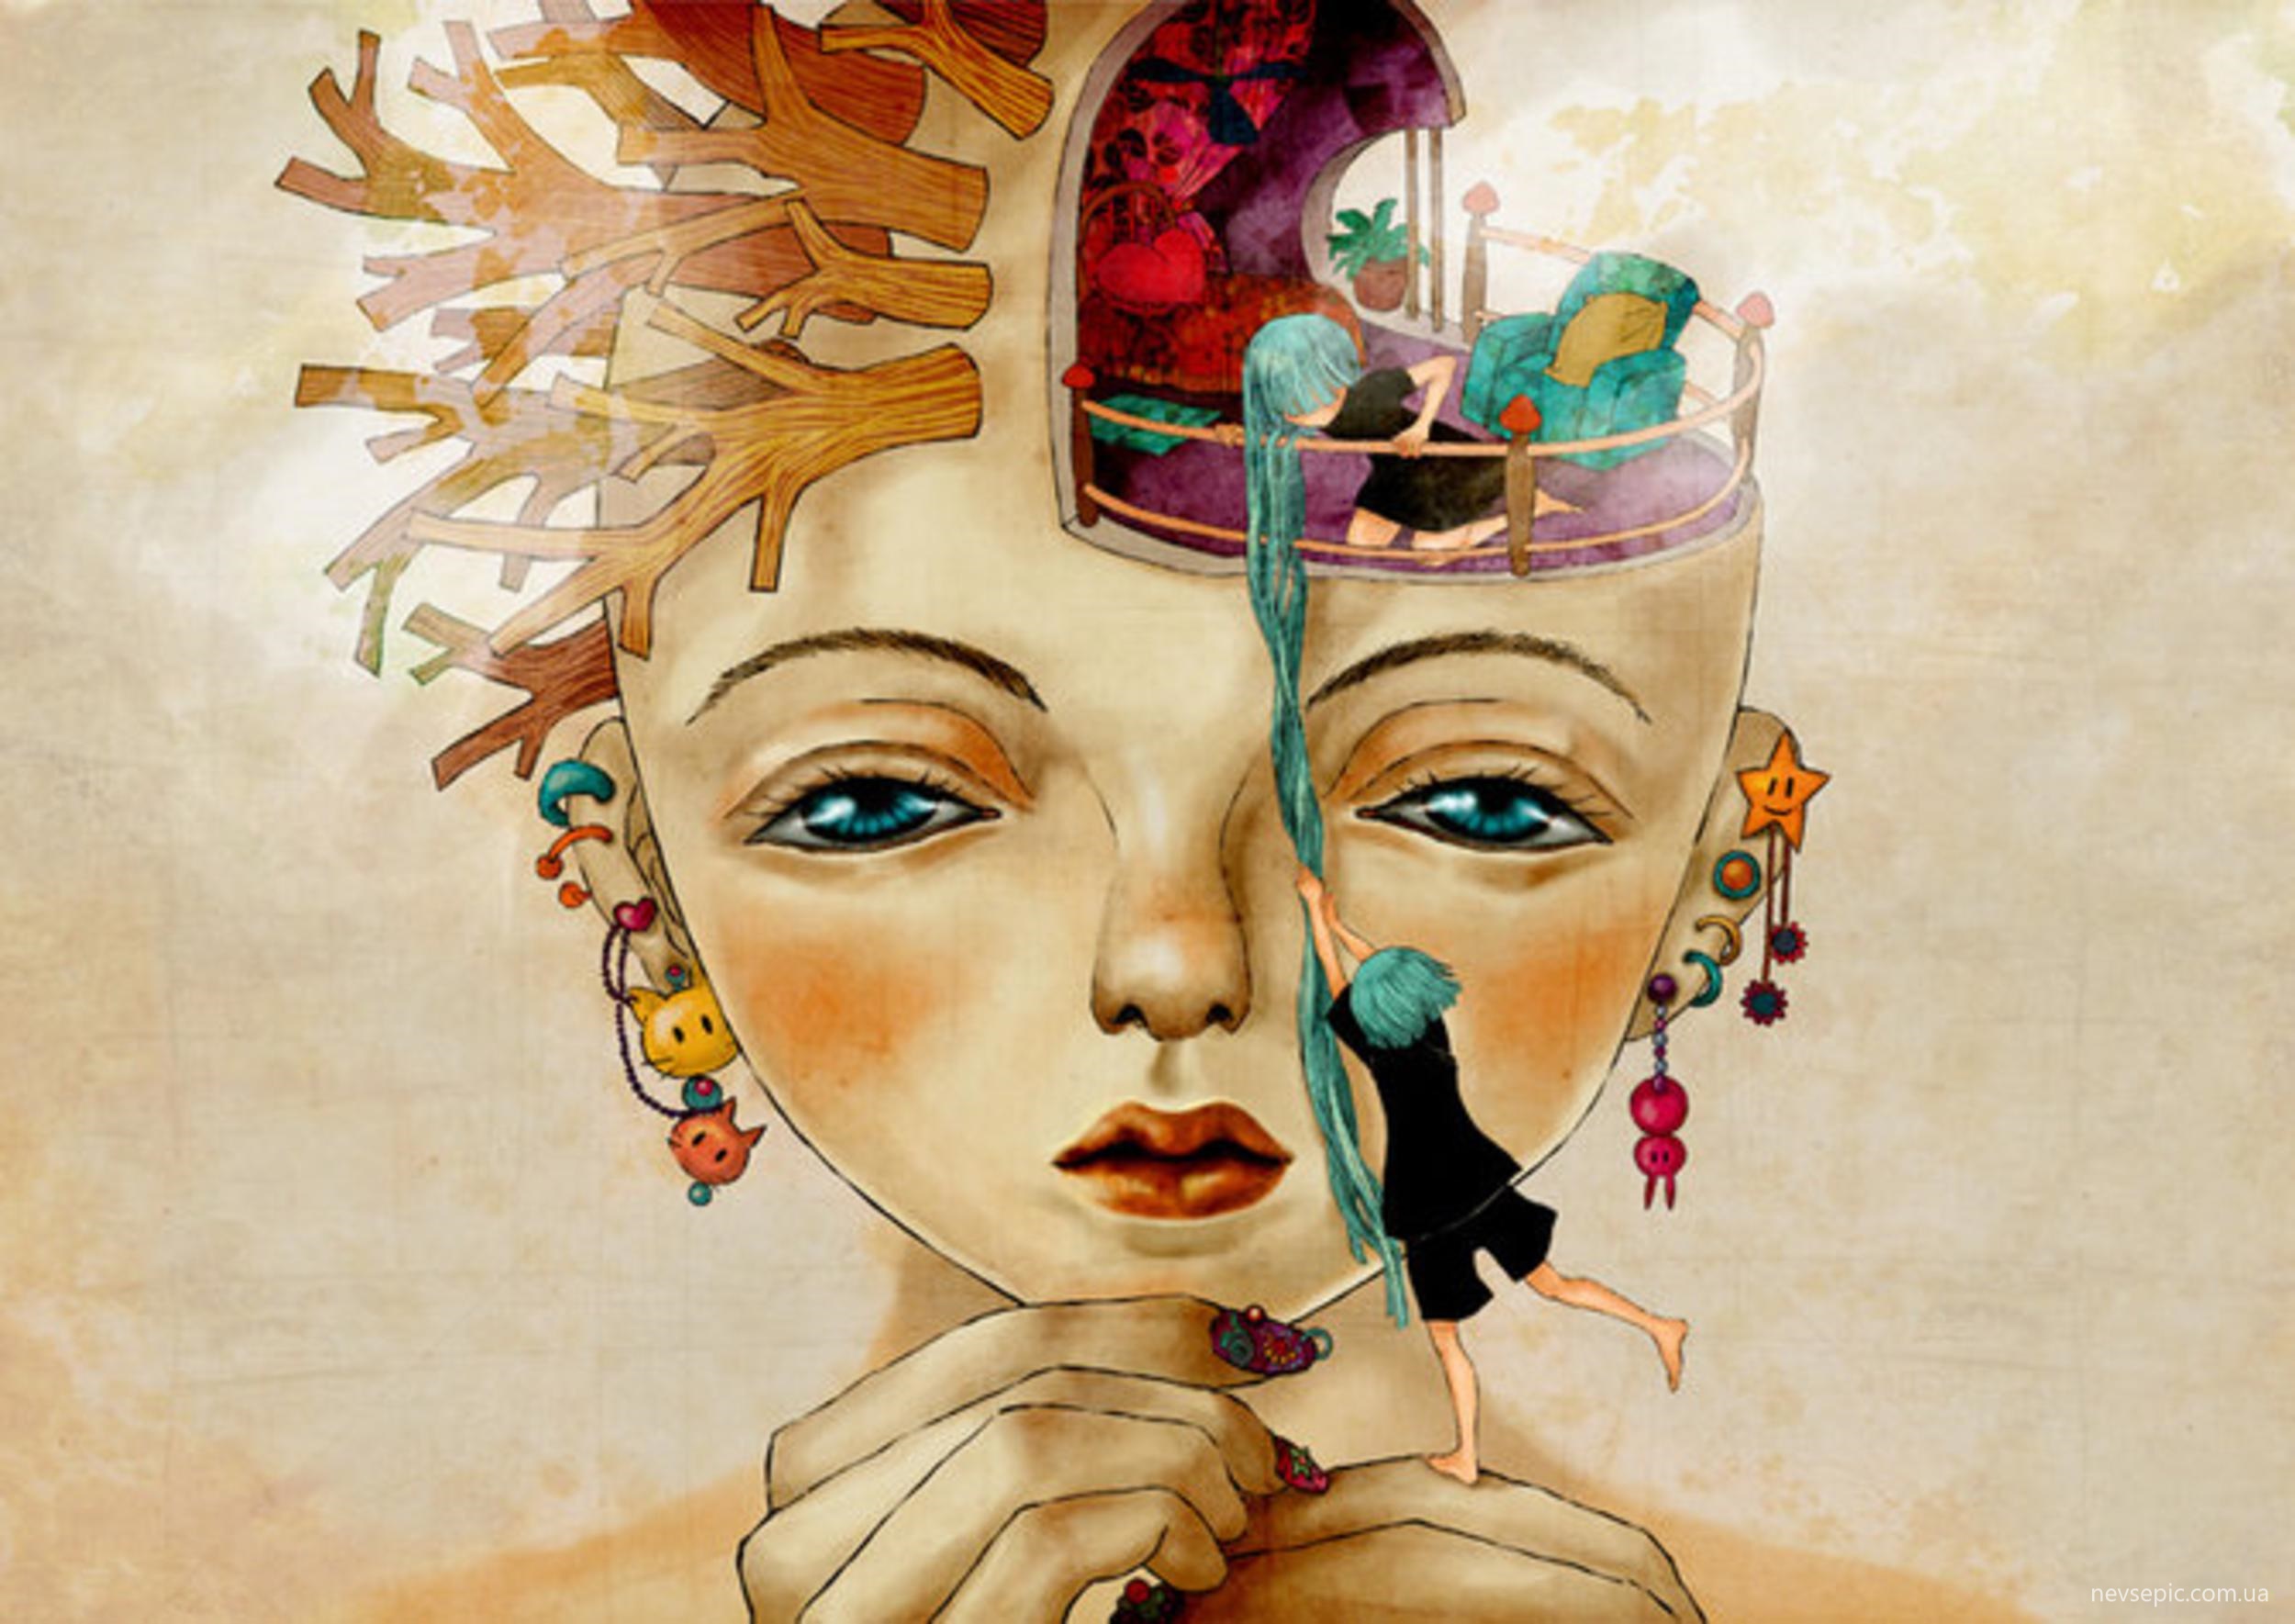 Голова с прекрасными мыслями. Художница MOONYKHOA le. Необычные картины. Креативная живопись. Образы в голове.